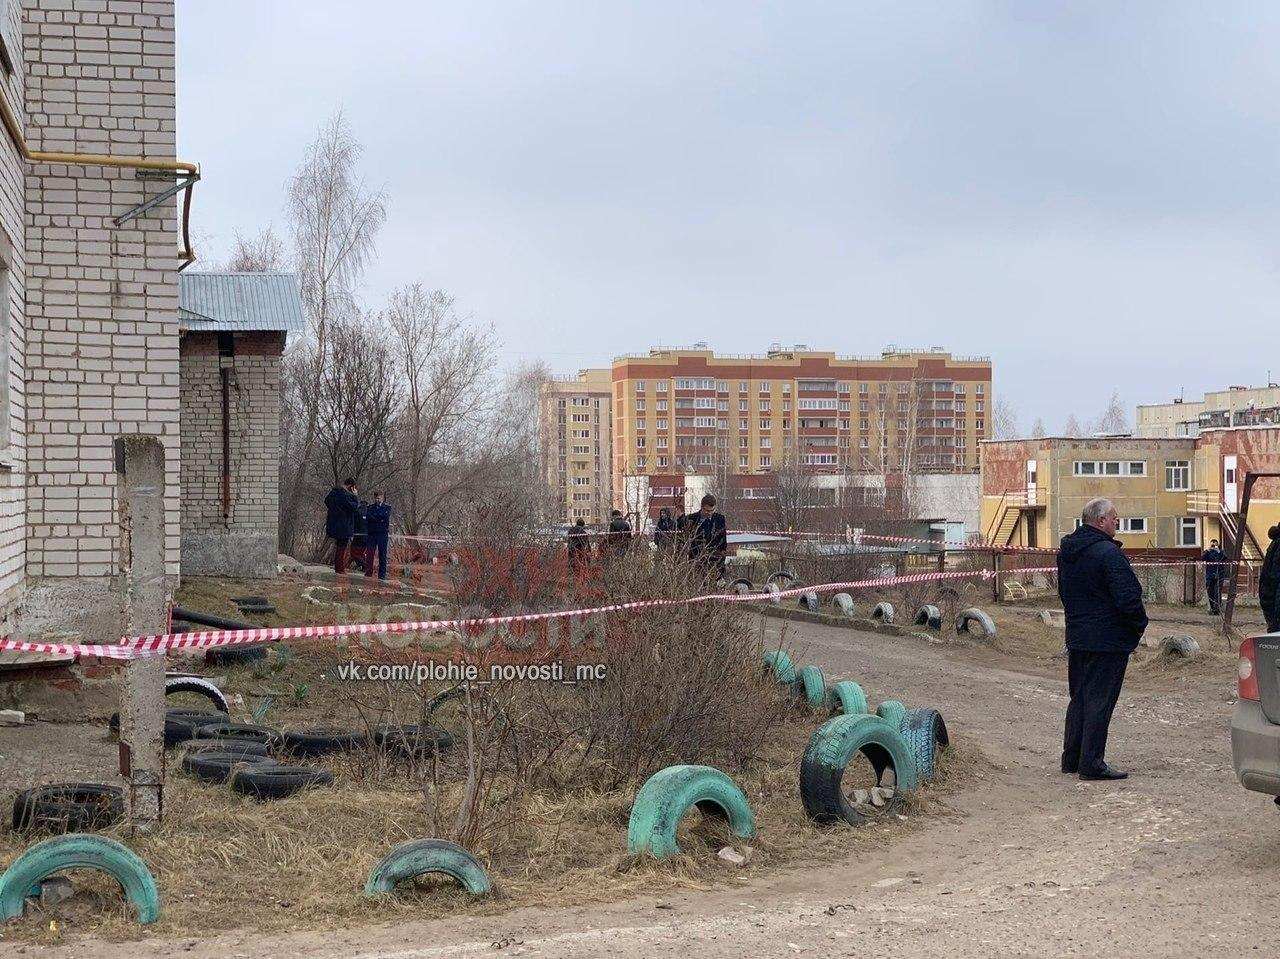 «Младшей перерезал горло»: в Сети появились жуткие подробности убийства семьи в Волжске